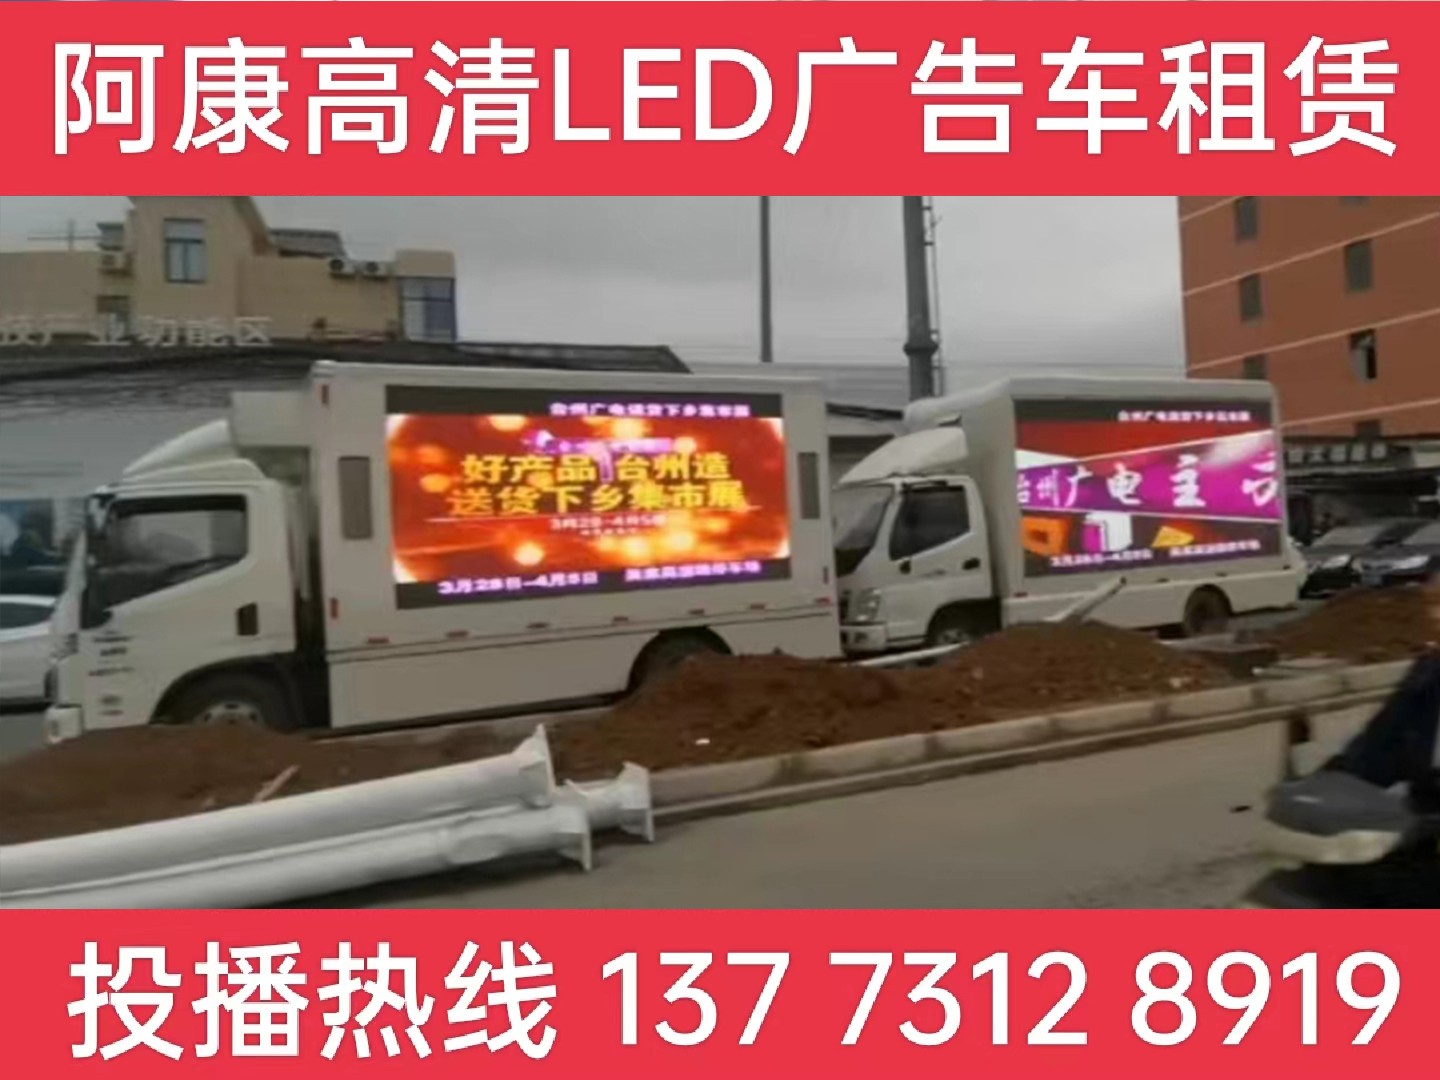 扬中LED宣传车租赁